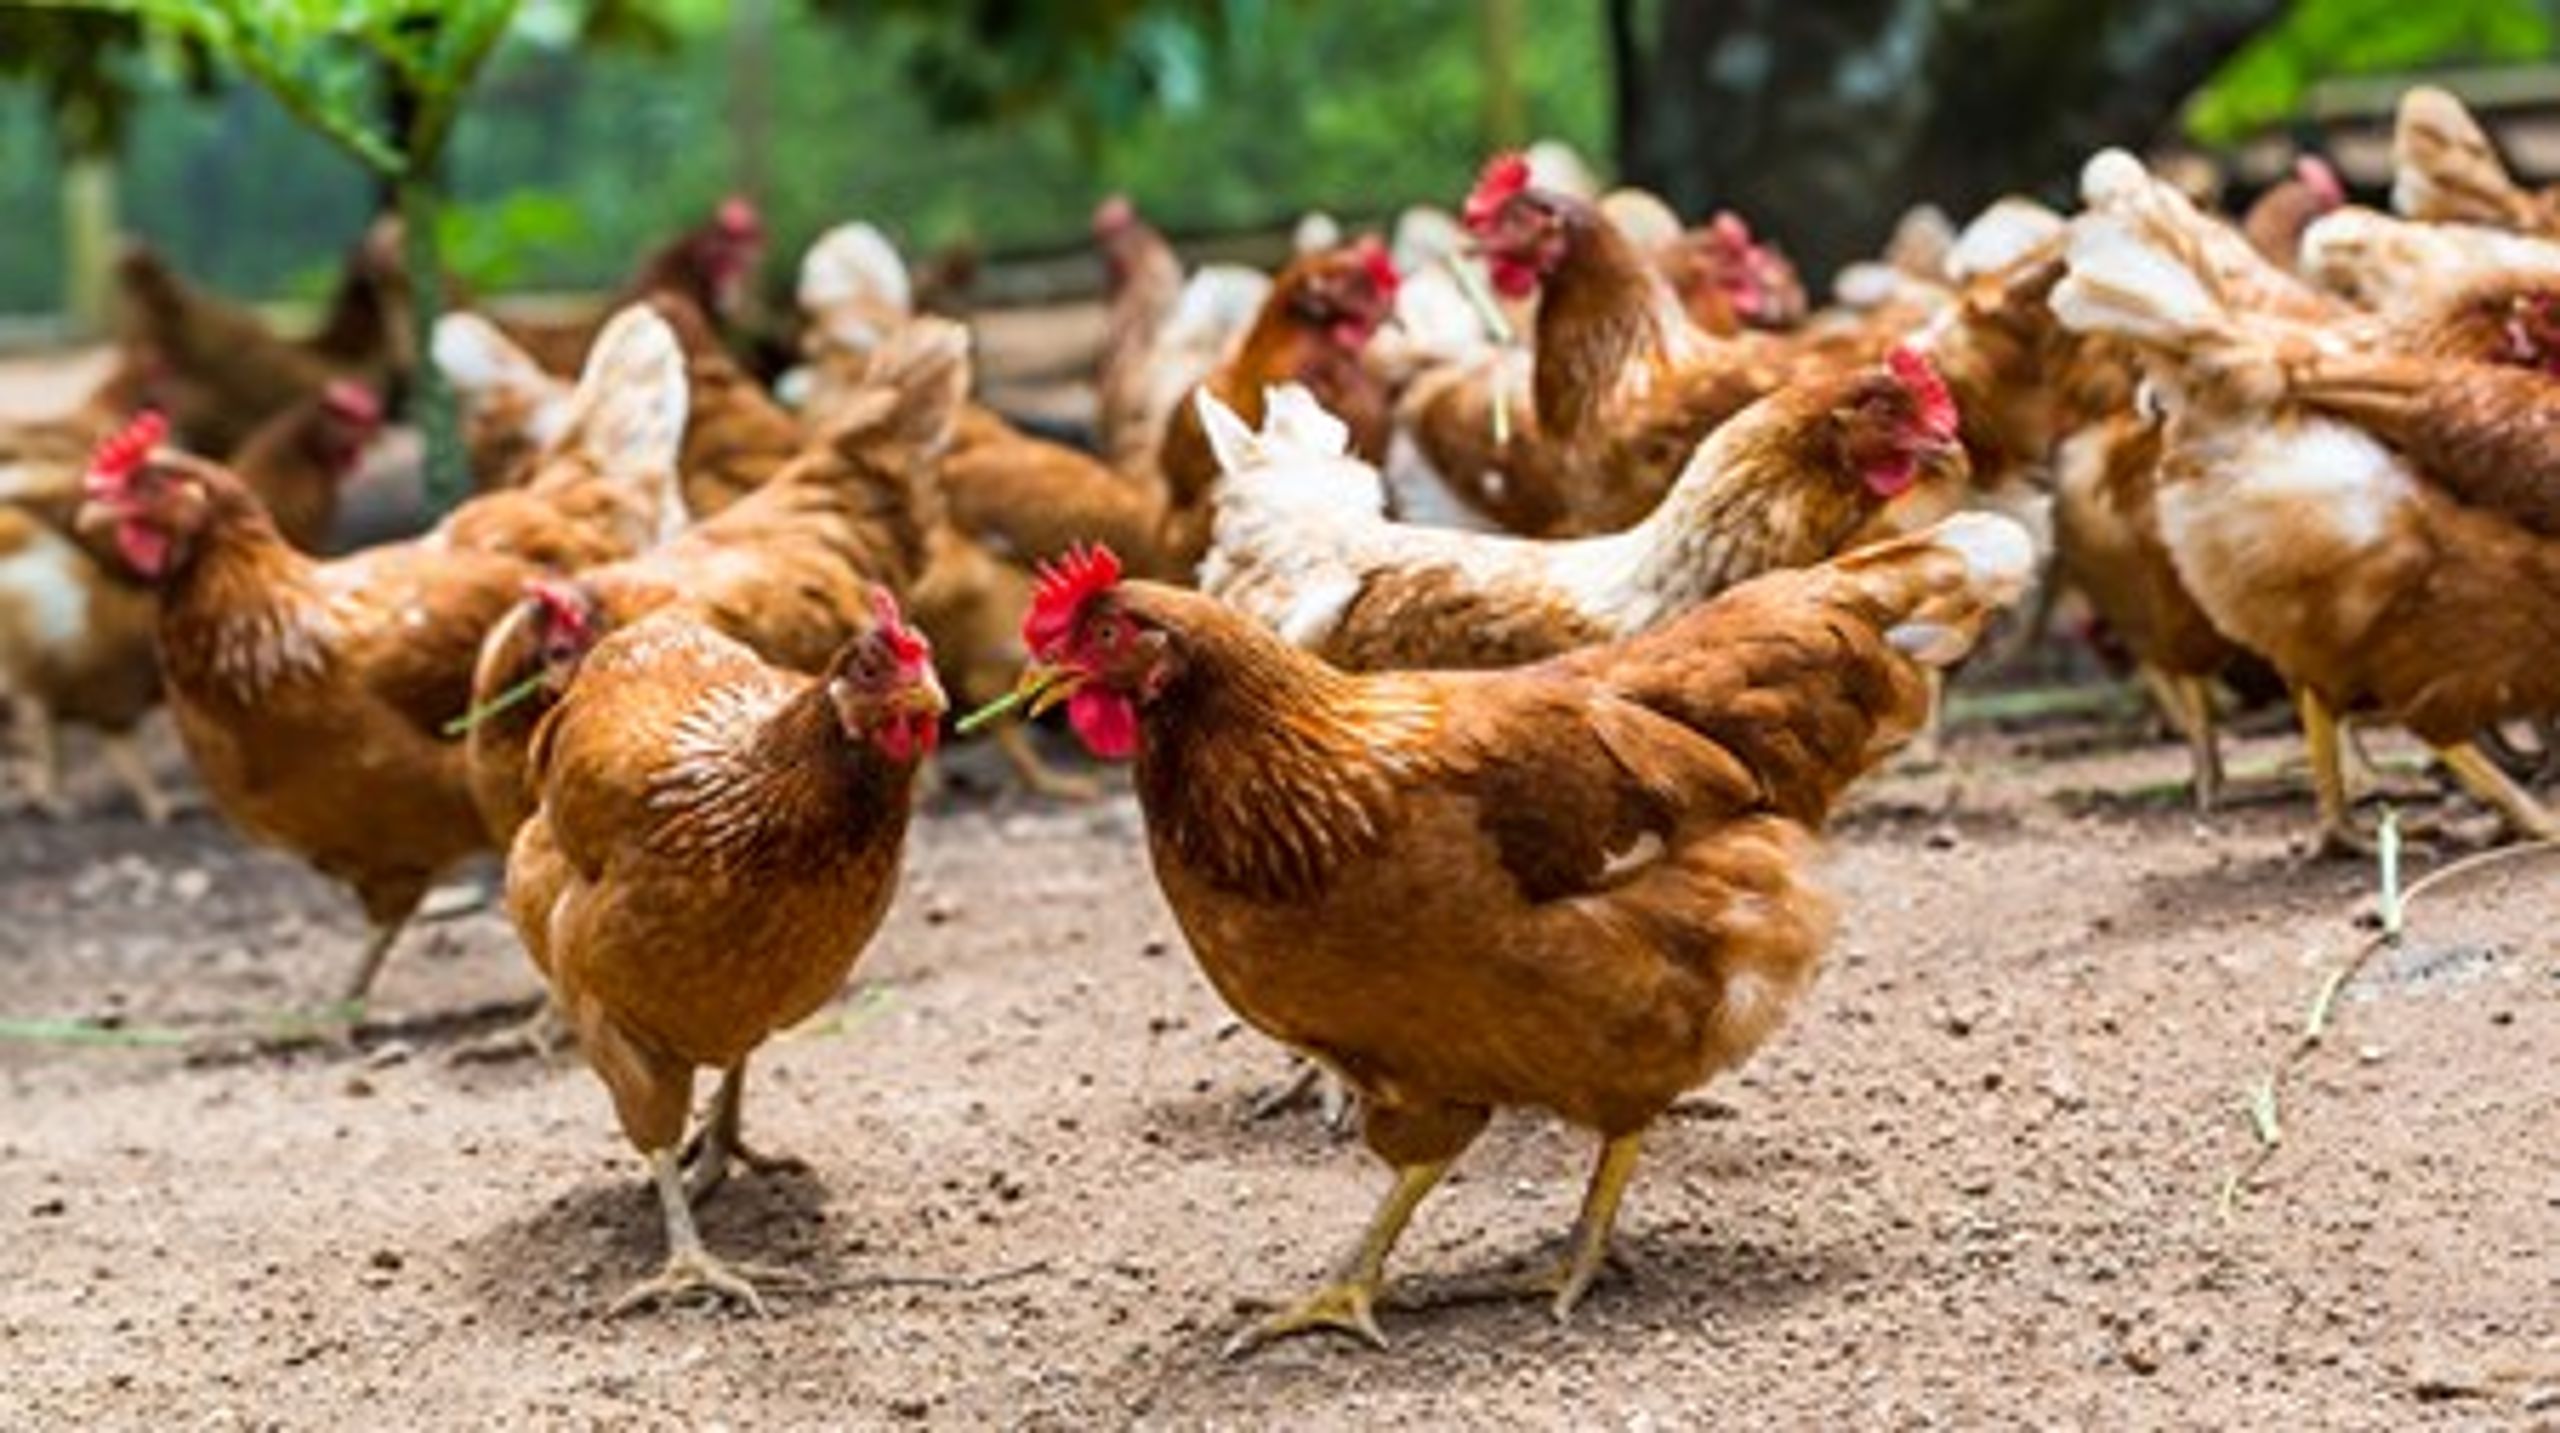 Europa-Parlamentet stemte i efteråret et forslag igennem, der for eksempel indebærer, at&nbsp;der maksimalt må være 12.000 æglæggende høner pr. bedrift. I Danmark er gennemsnittet på omkring 18.000.